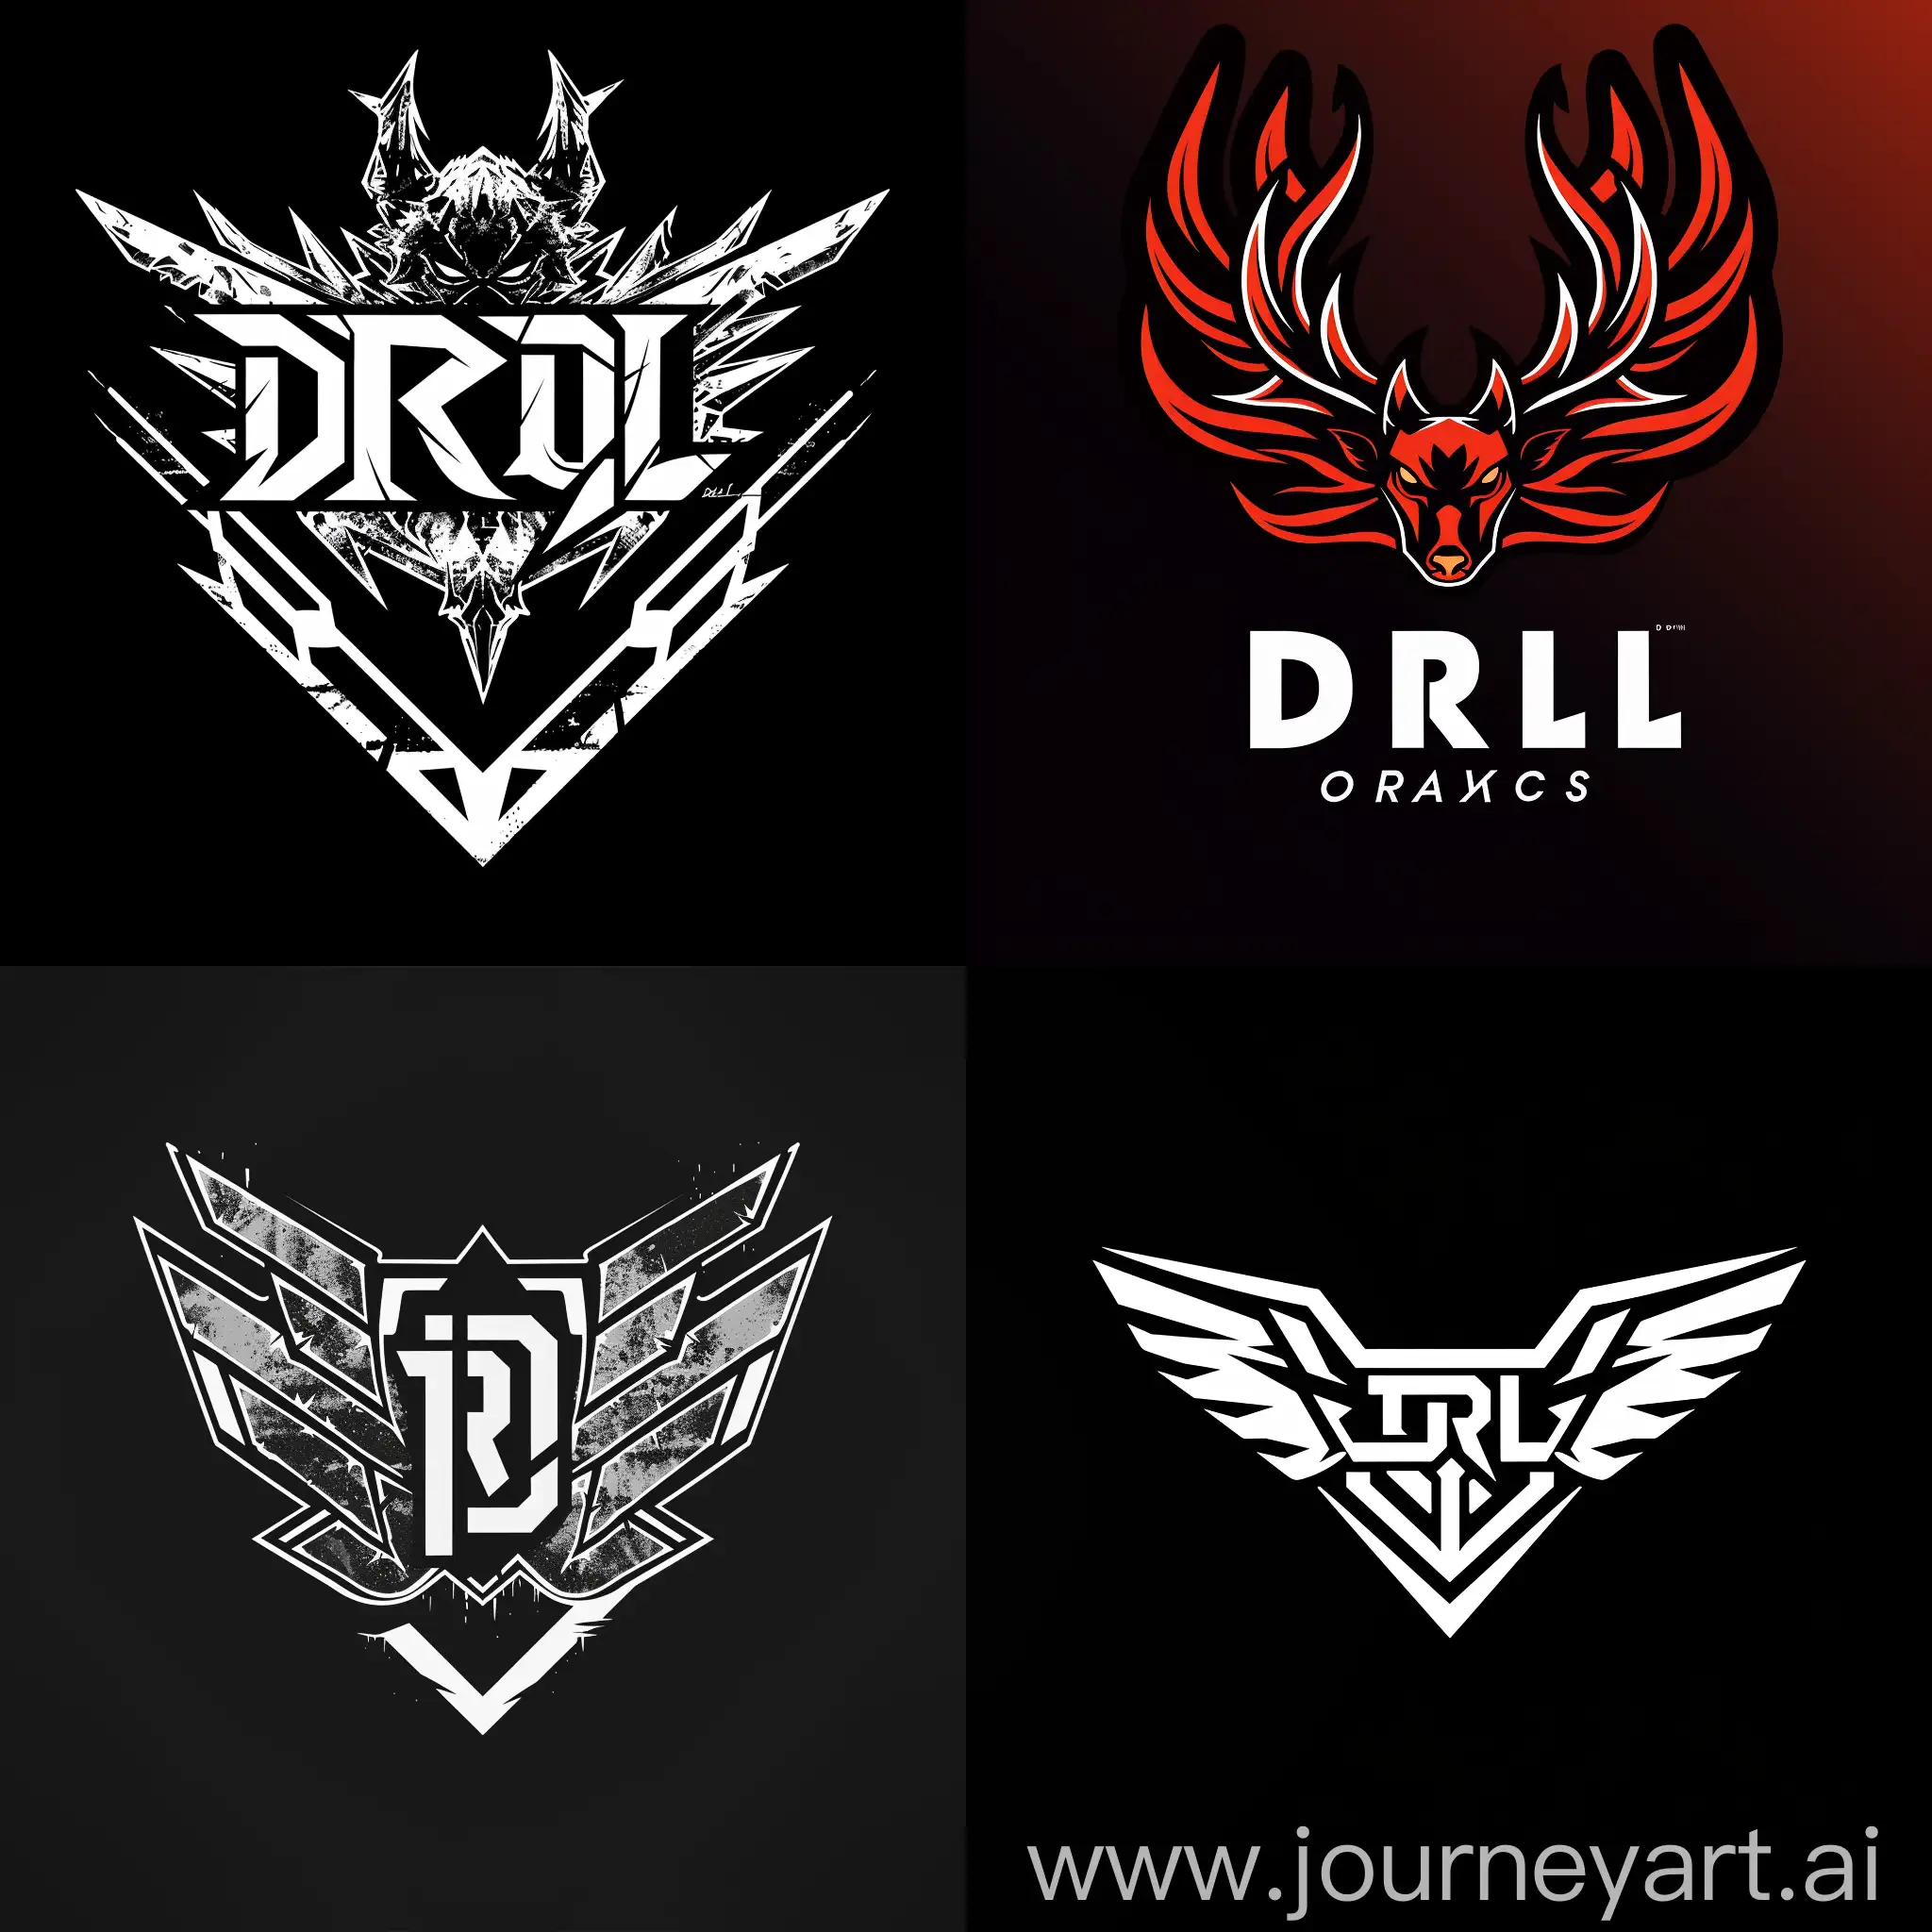 создай логотип игровой компании из символов: d r l; высокое качество; хорошая детализация; четкая прорисовка; качественное изображение.